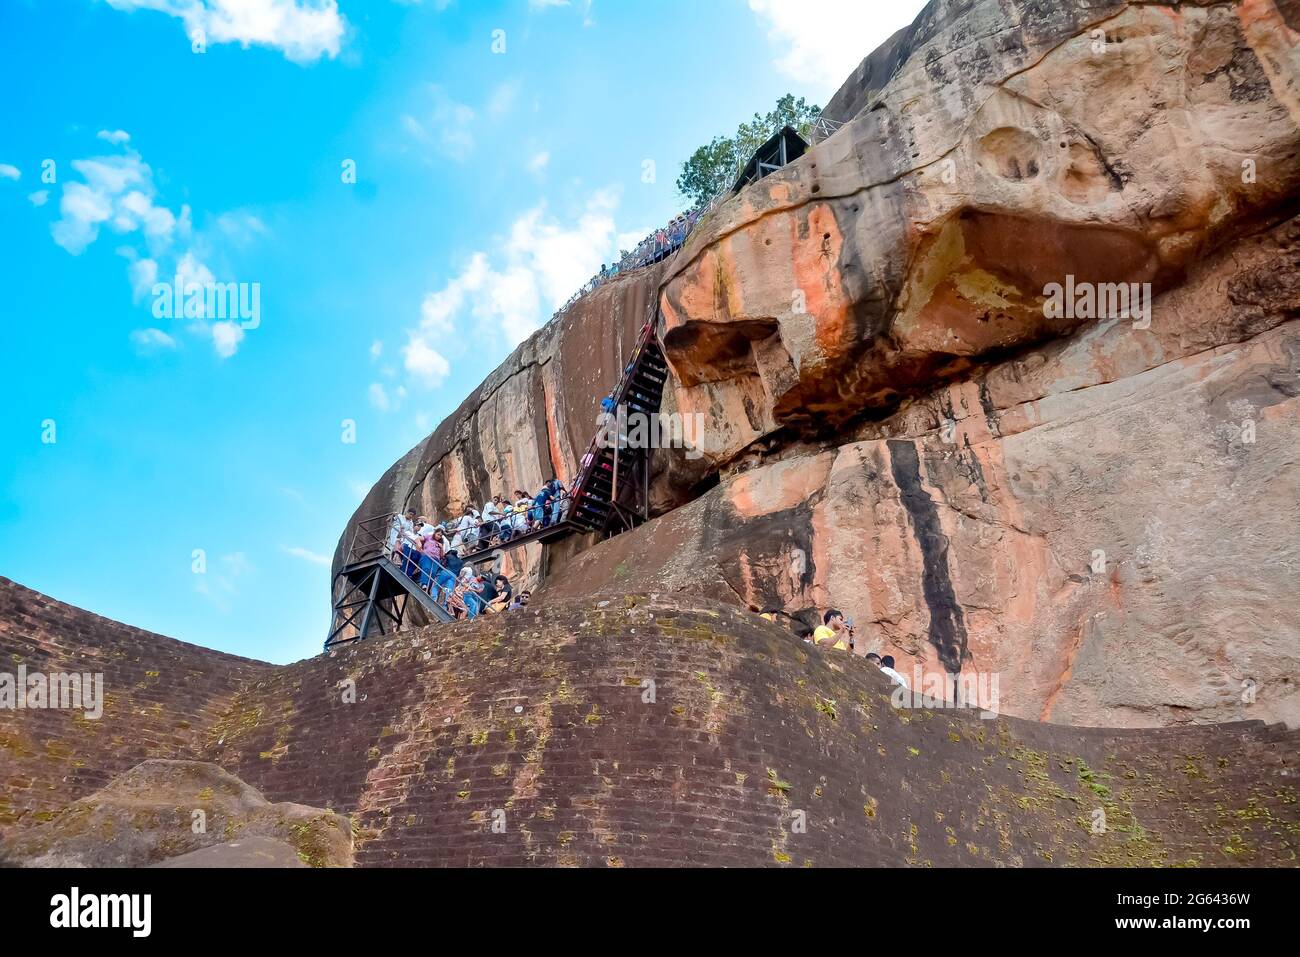 Felsenfestung Sigiriya 5. Tanzschrift ruinierte Burg, die die Unesco als Weltkulturerbe In Sri Lanka aufgeführt ist Stockfoto